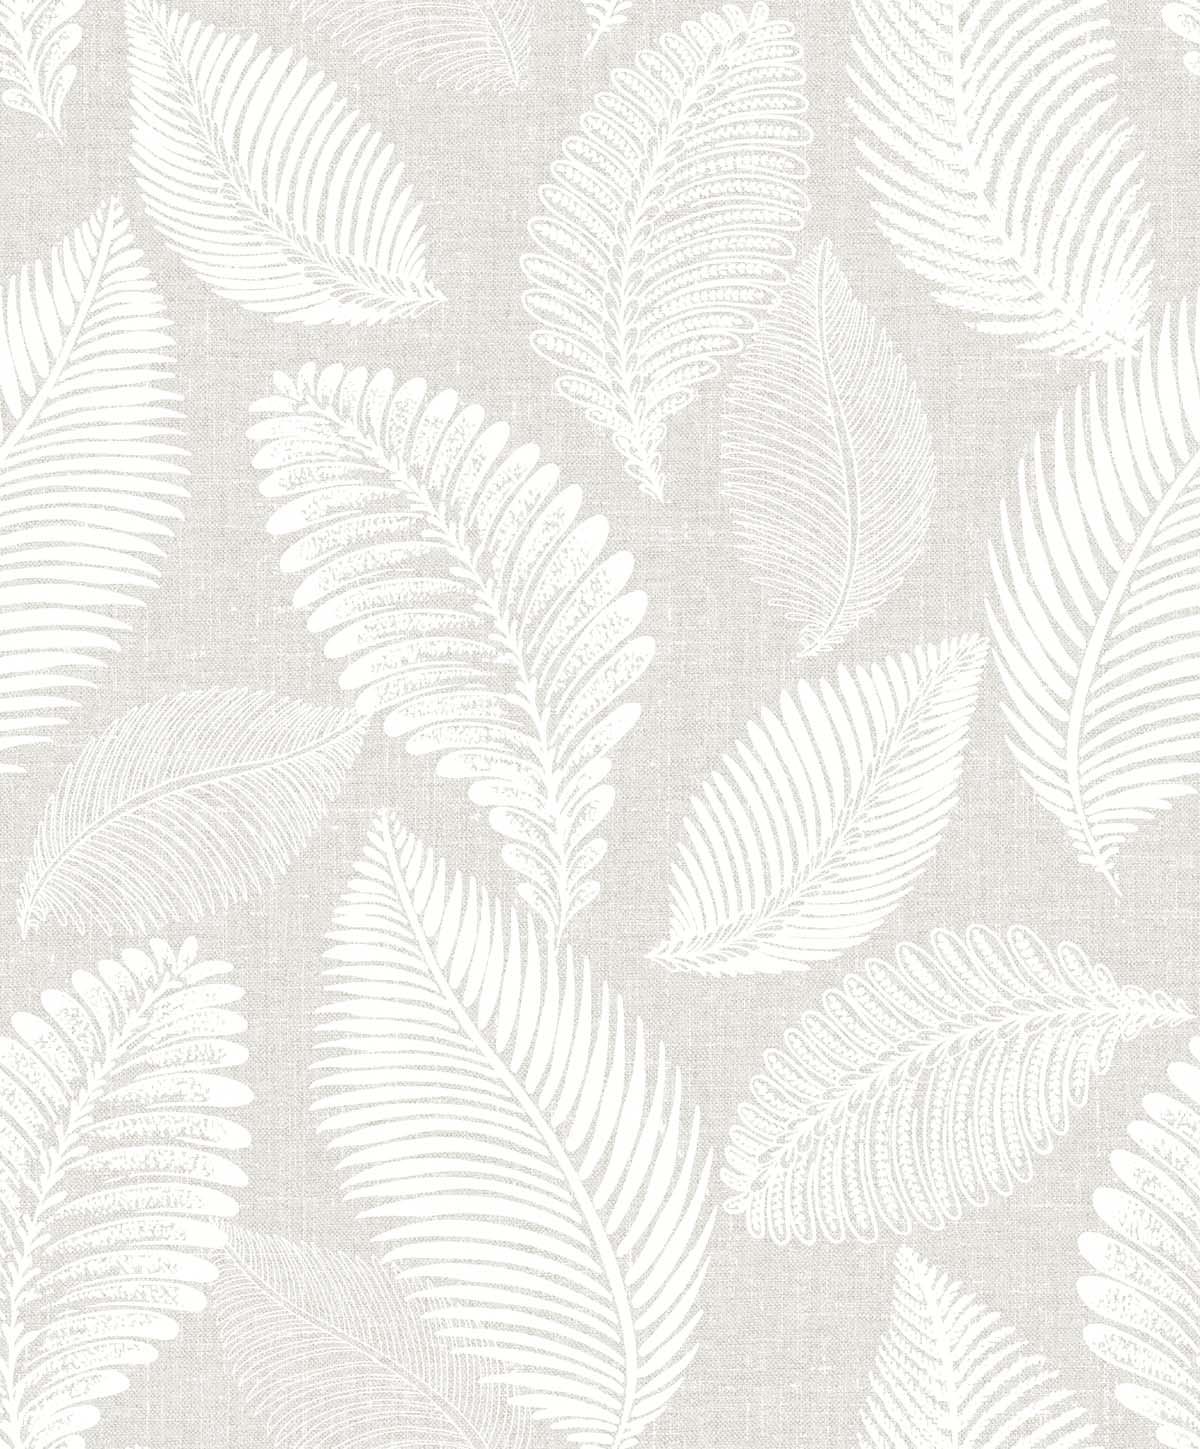 EW10007 | Tossed Leaves, Beige - Seabrook Designs Wallpaper